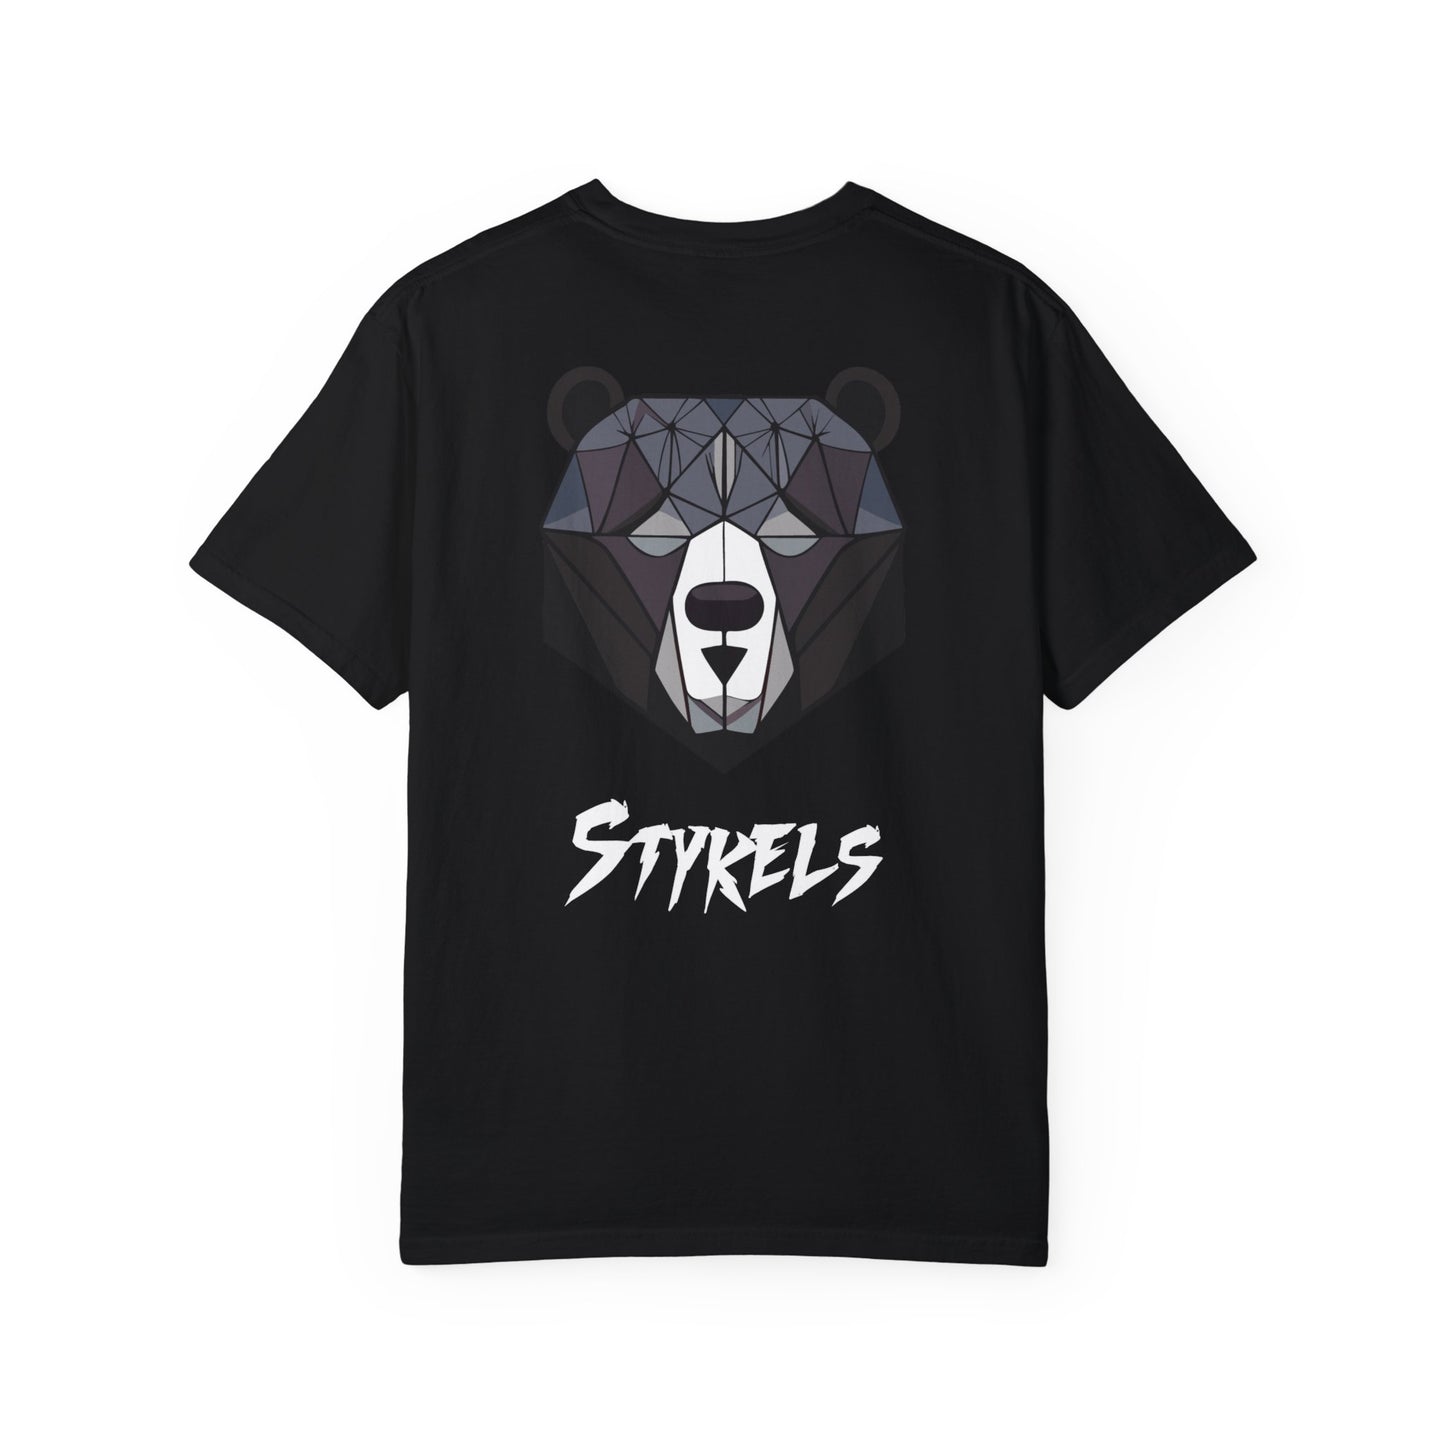 Unisex T-shirt bear design